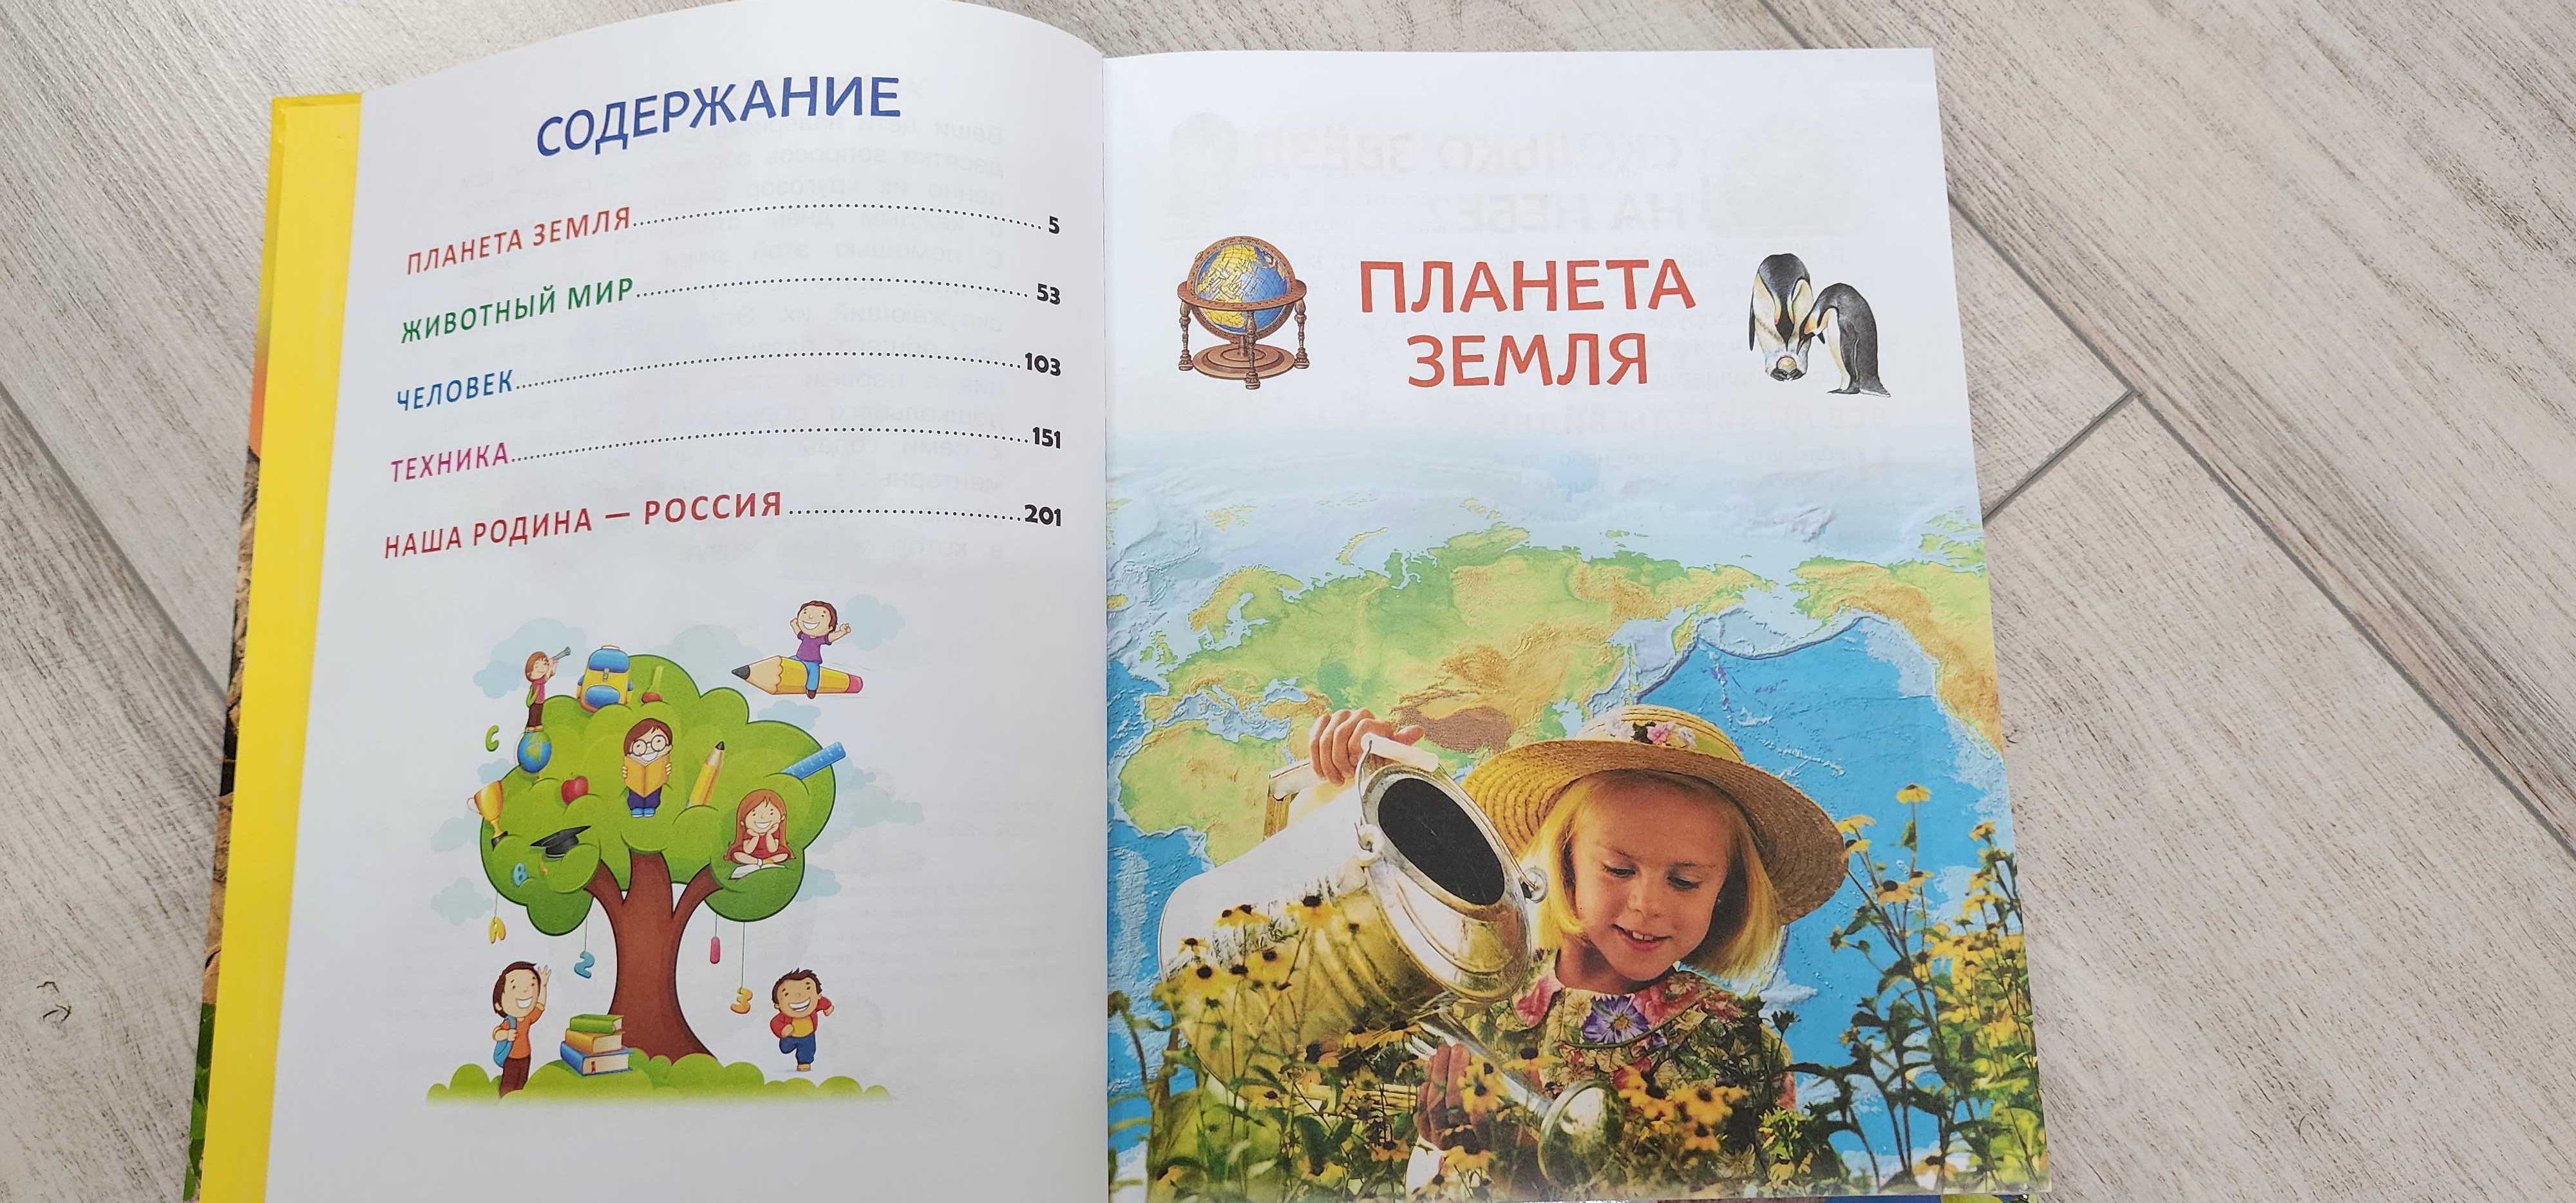 Книга Большая энциклопедия для детского сада